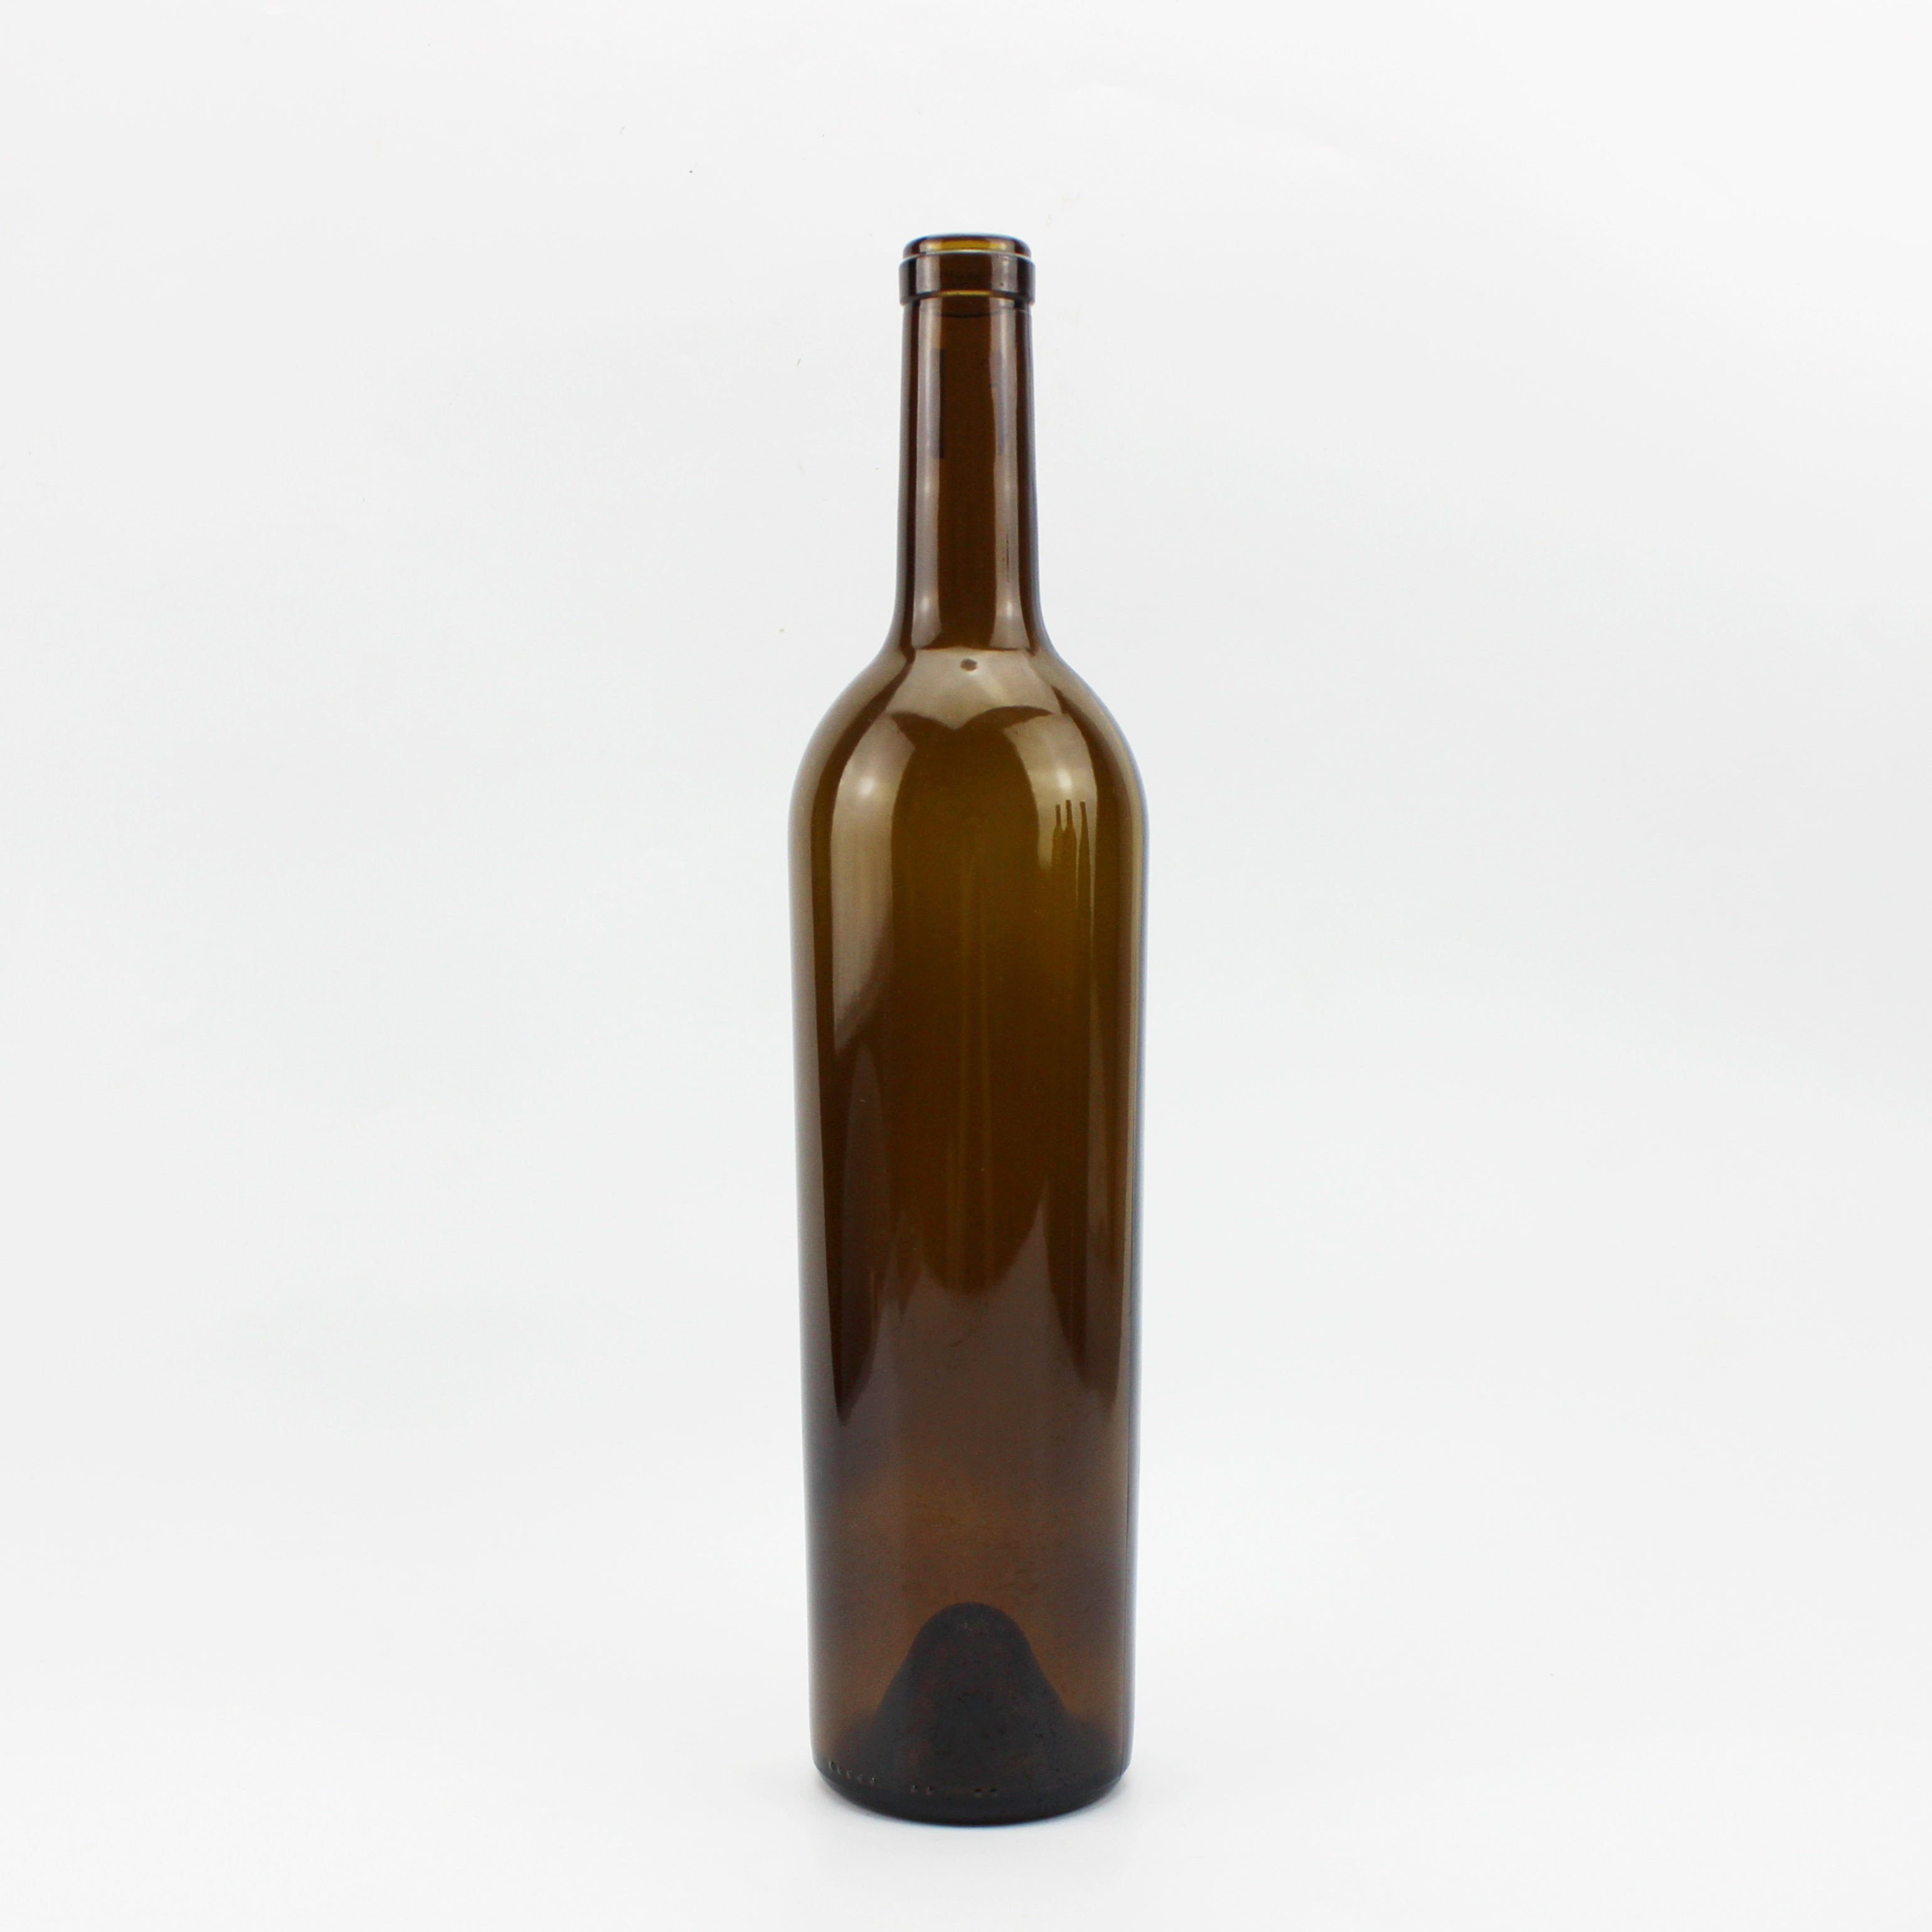 ODM Olive Green 750ML Bordeaux Wine Bottle